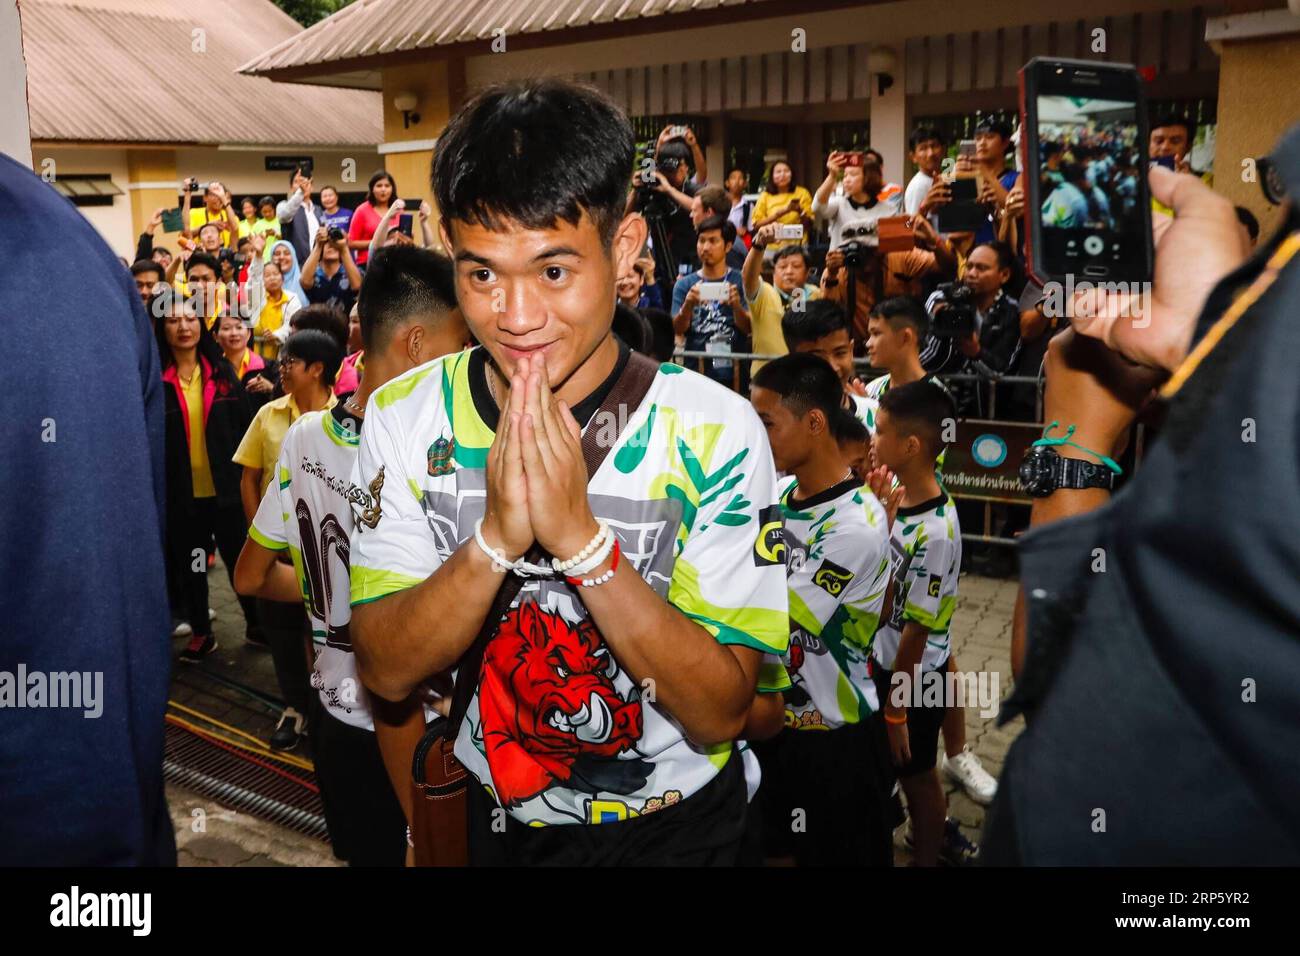 (181227) -- BEIJING, 27 de diciembre de 2018 -- Foto tomada el 18 de julio de 2018 muestra a los 12 niños y su entrenador de fútbol rescatados de una cueva inundada en el norte de Tailandia hacen su primera aparición pública en una conferencia de prensa en Bangkok, Tailandia. Un equipo de fútbol tailandés de 12 niños de entre 11 y 16 años y su entrenador quedaron atrapados en una cueva inundada el 23 de junio. Todos ellos fueron rescatados con éxito después de 18 días, gracias a los esfuerzos conjuntos de más de 1.000 personal de equipos de rescate locales e internacionales de China, Estados Unidos, Gran Bretaña y otros países. ) TOP 10 DE NOTICIAS DEPORTIVAS MUNDIALES 201 Foto de stock